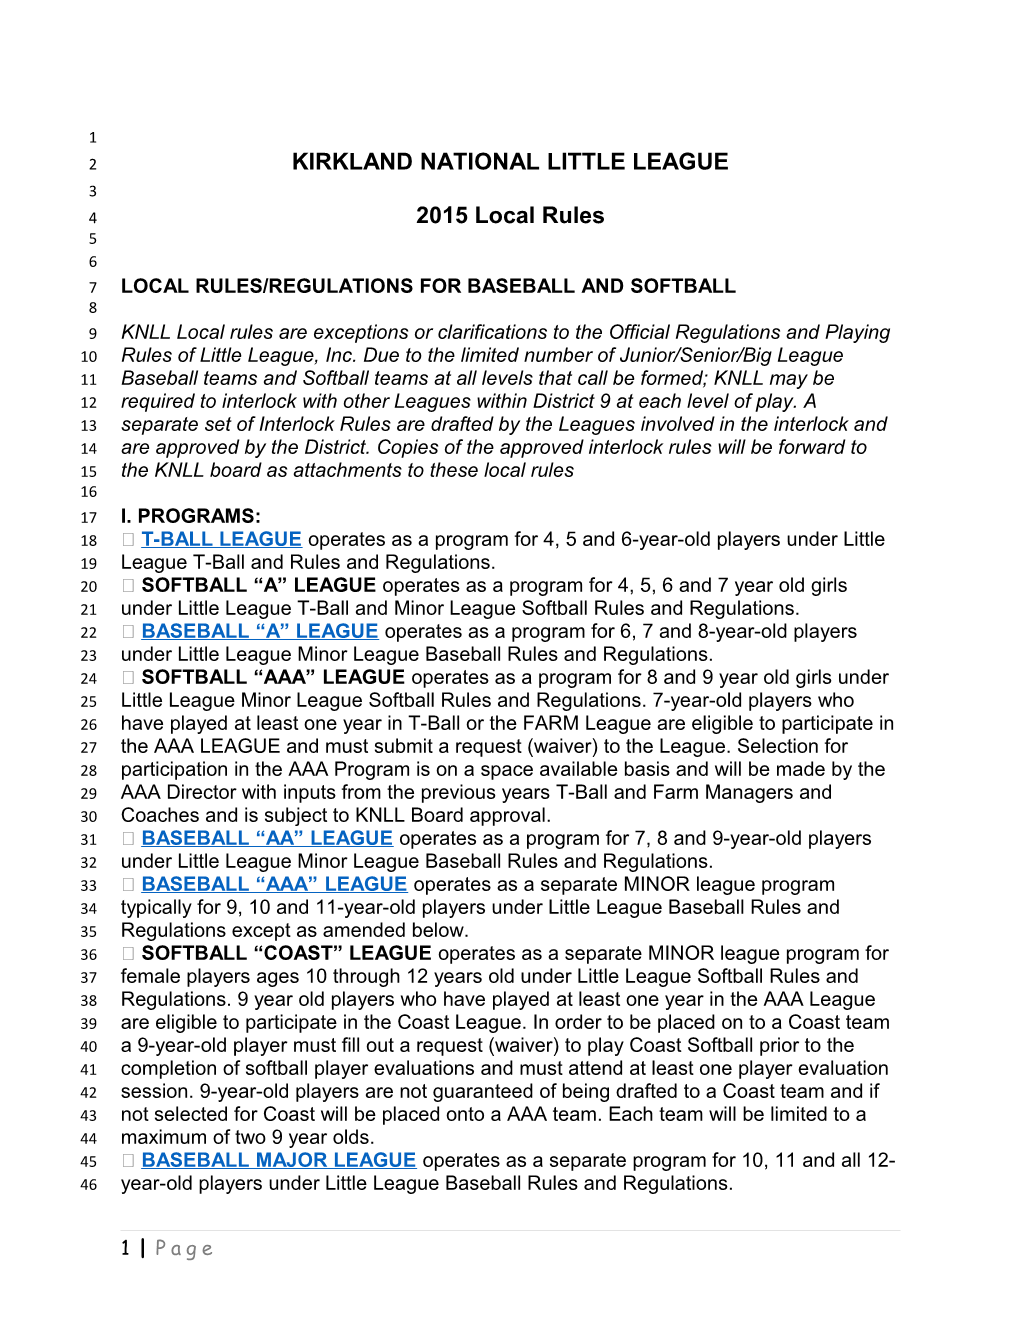 Local Rules/Regulations for Baseball and Softball